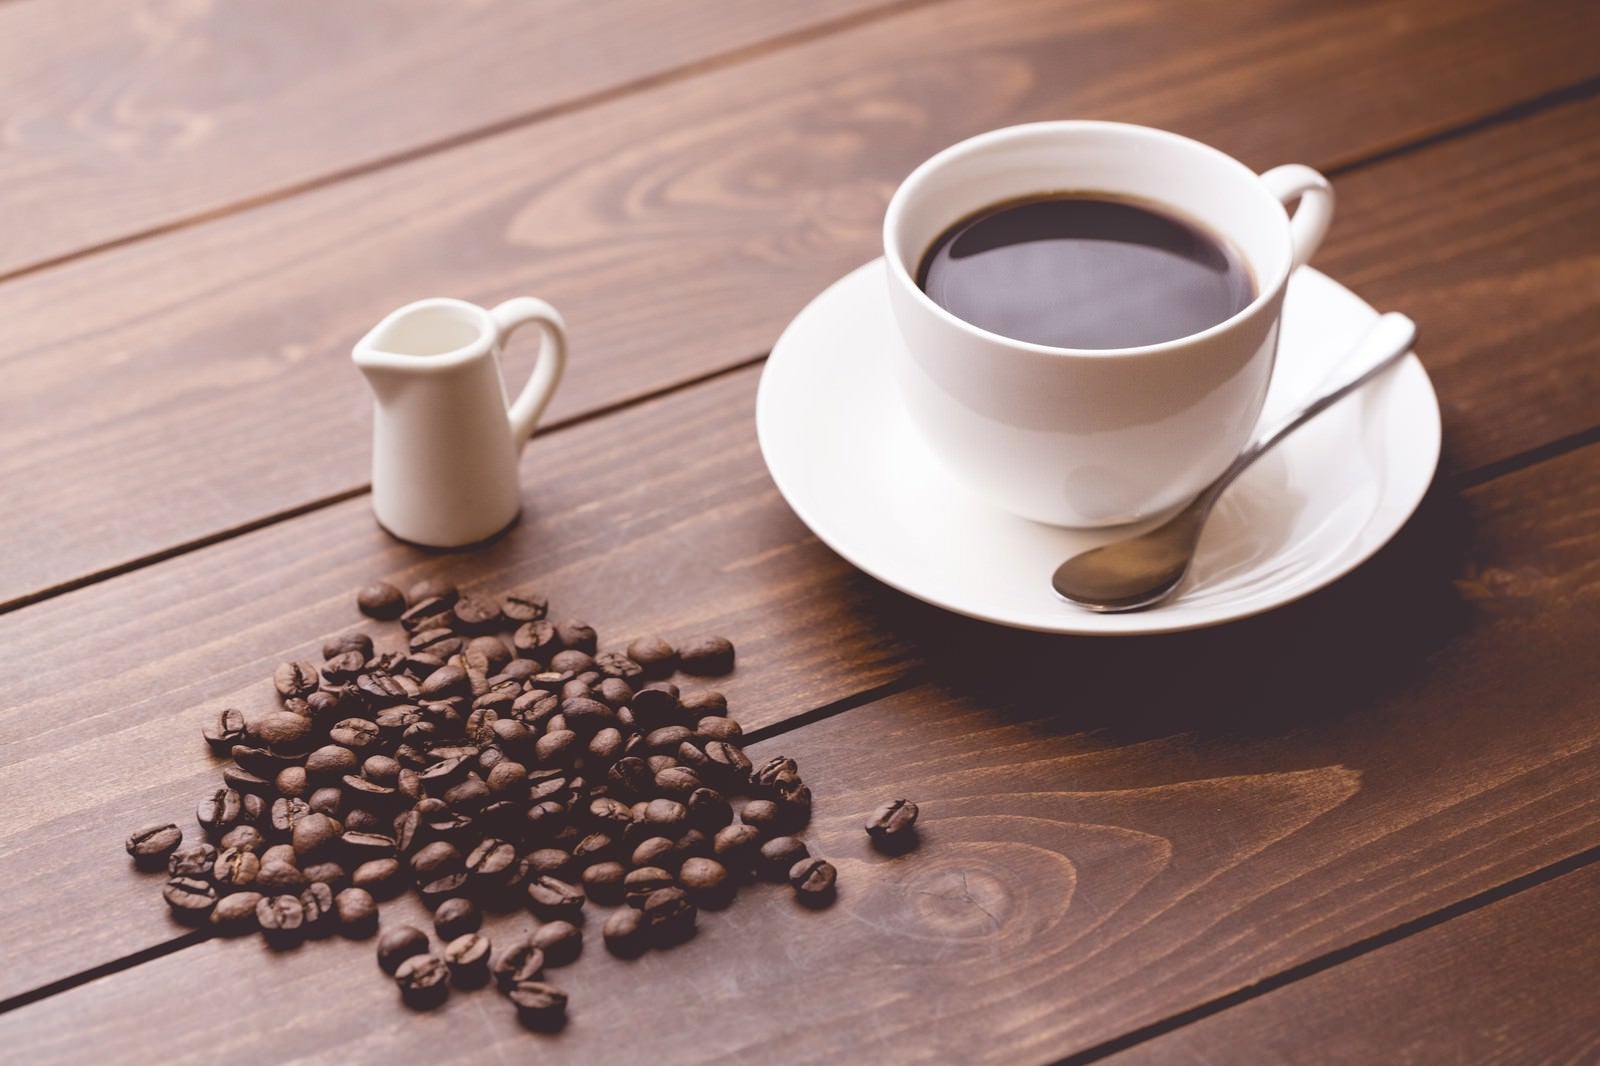 「コーヒー豆と淹れたてのコーヒー」の写真